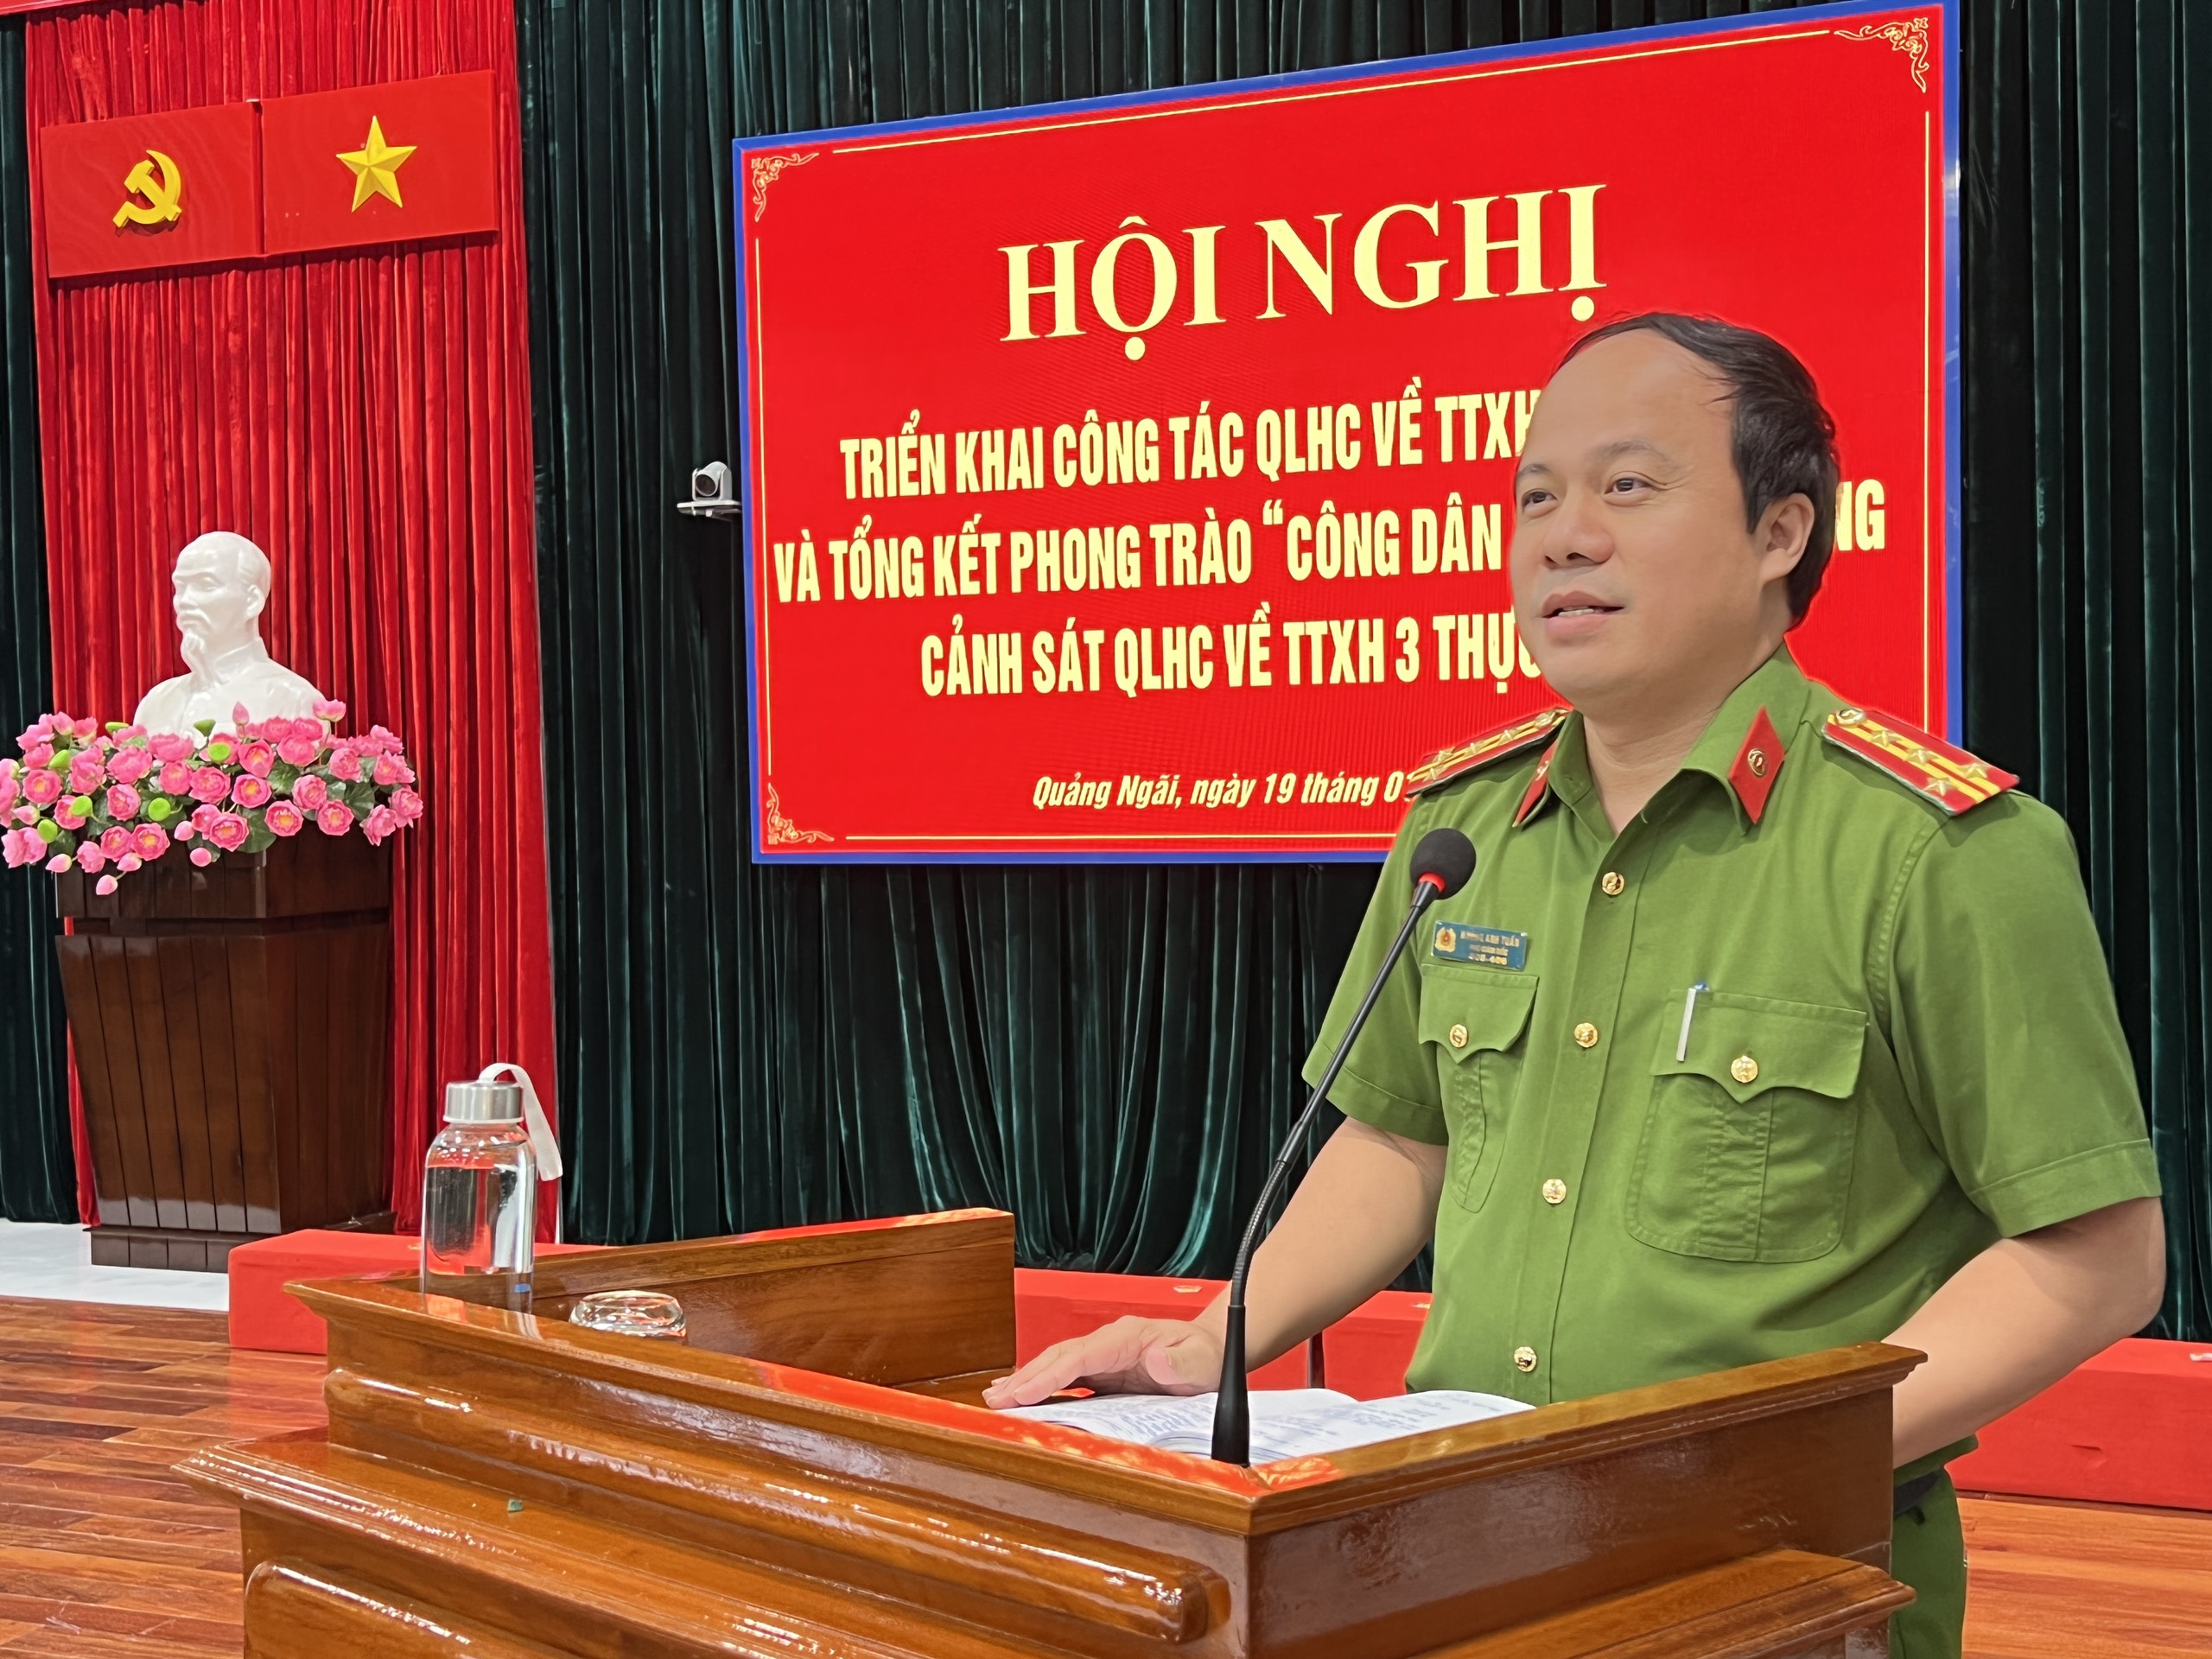 Công an tỉnh Quảng Ngãi tổ chức Hội nghị triển khai công tác QLHC về TTXH năm 2024 và tổng kết phong trào “Công dân 3 có, lực lượng Cảnh sát QLHC về TTXH 3 thực hiện”